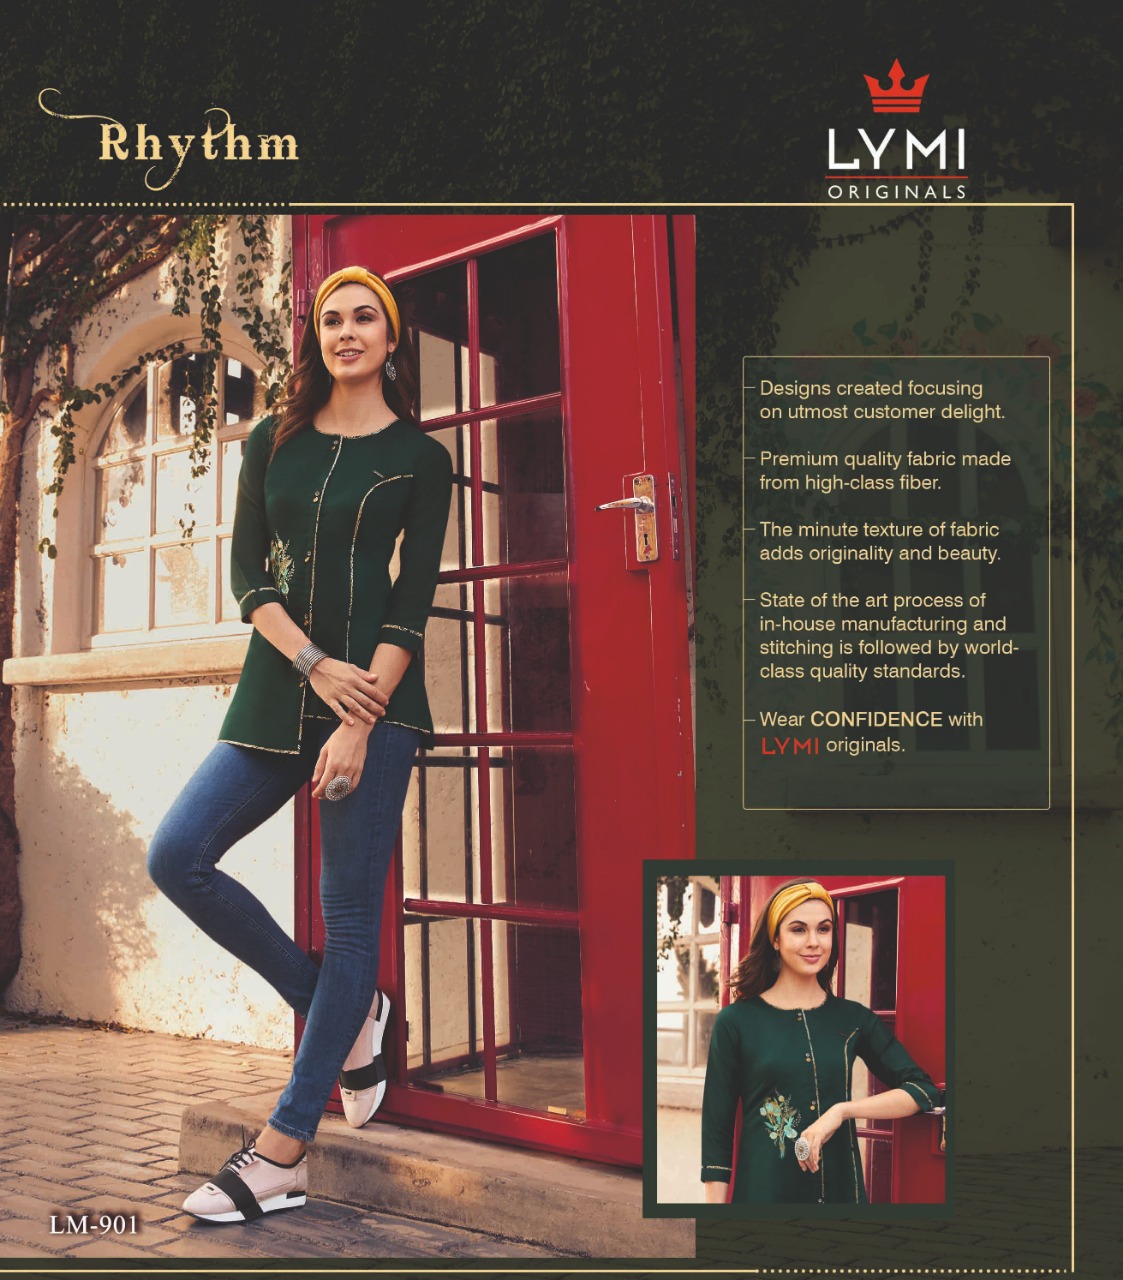 Lymi originals rhythm short top summer wear collection